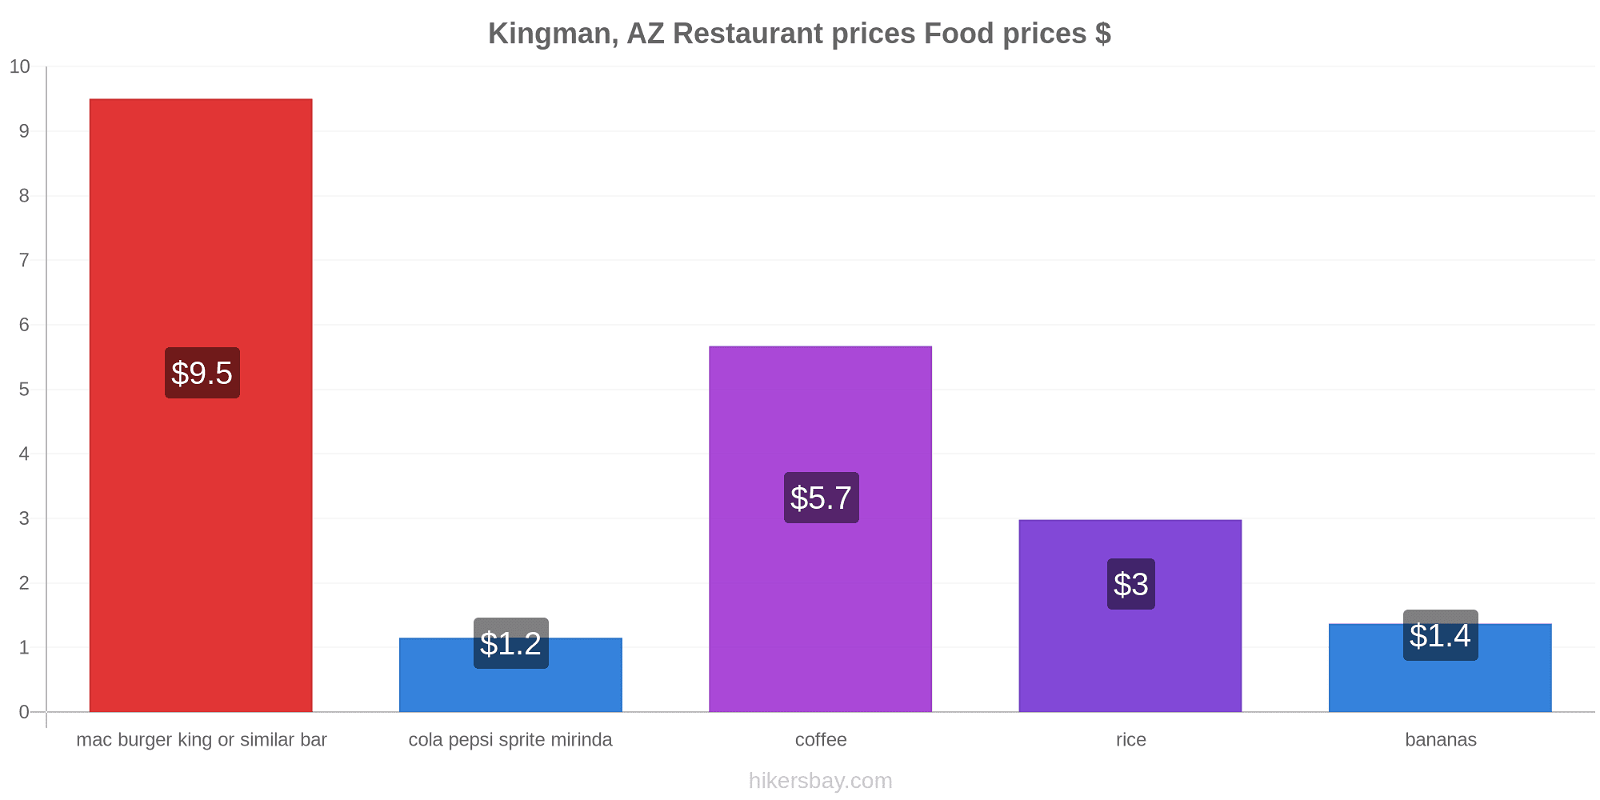 Kingman, AZ price changes hikersbay.com